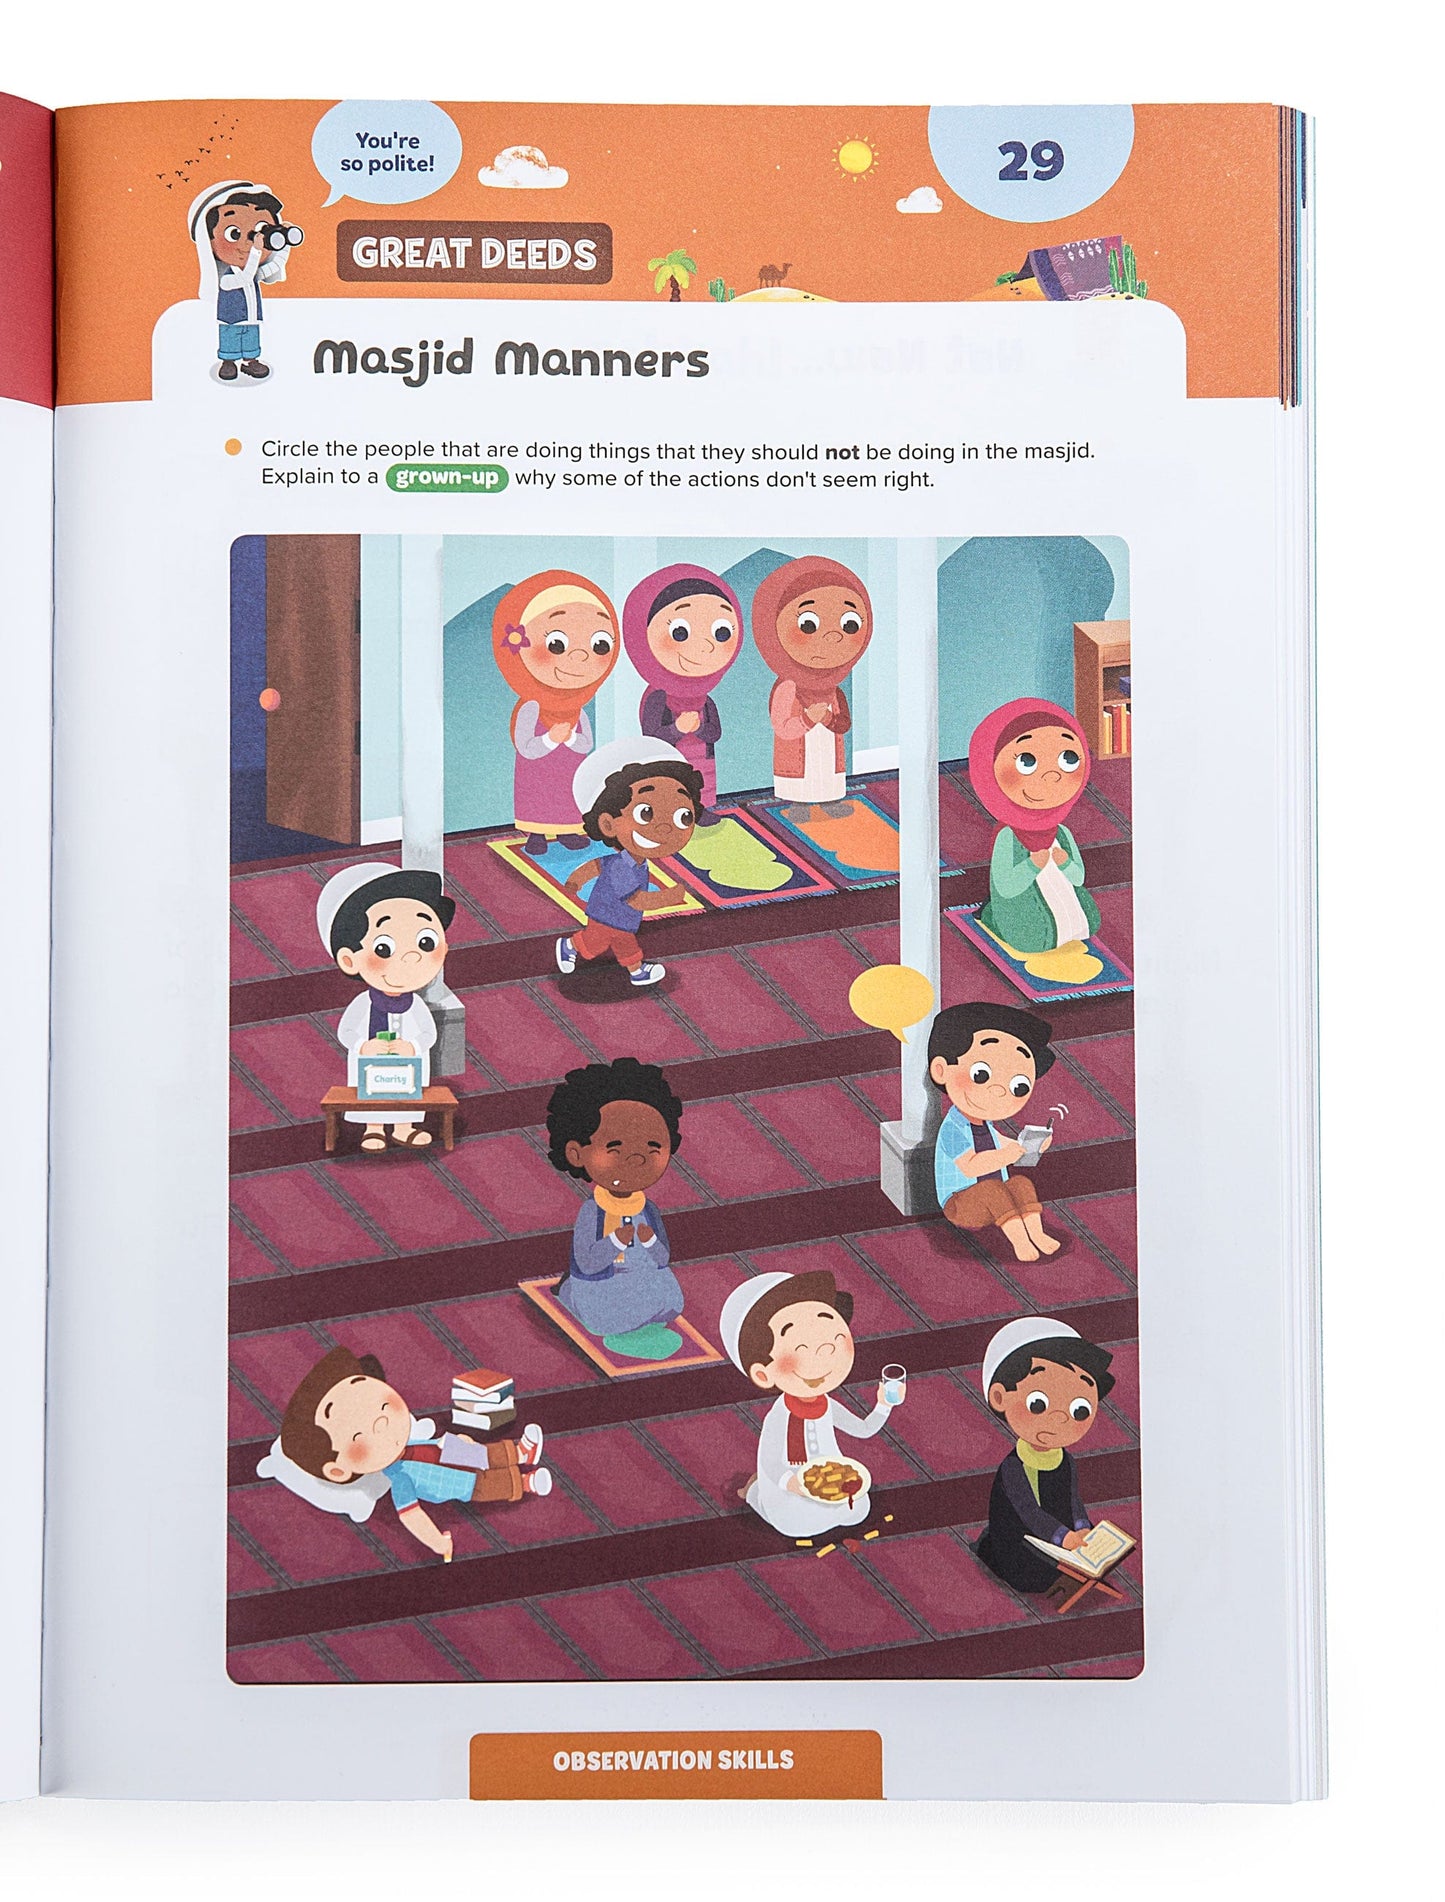 Ramadan Activity Book for Big Kids (8+)